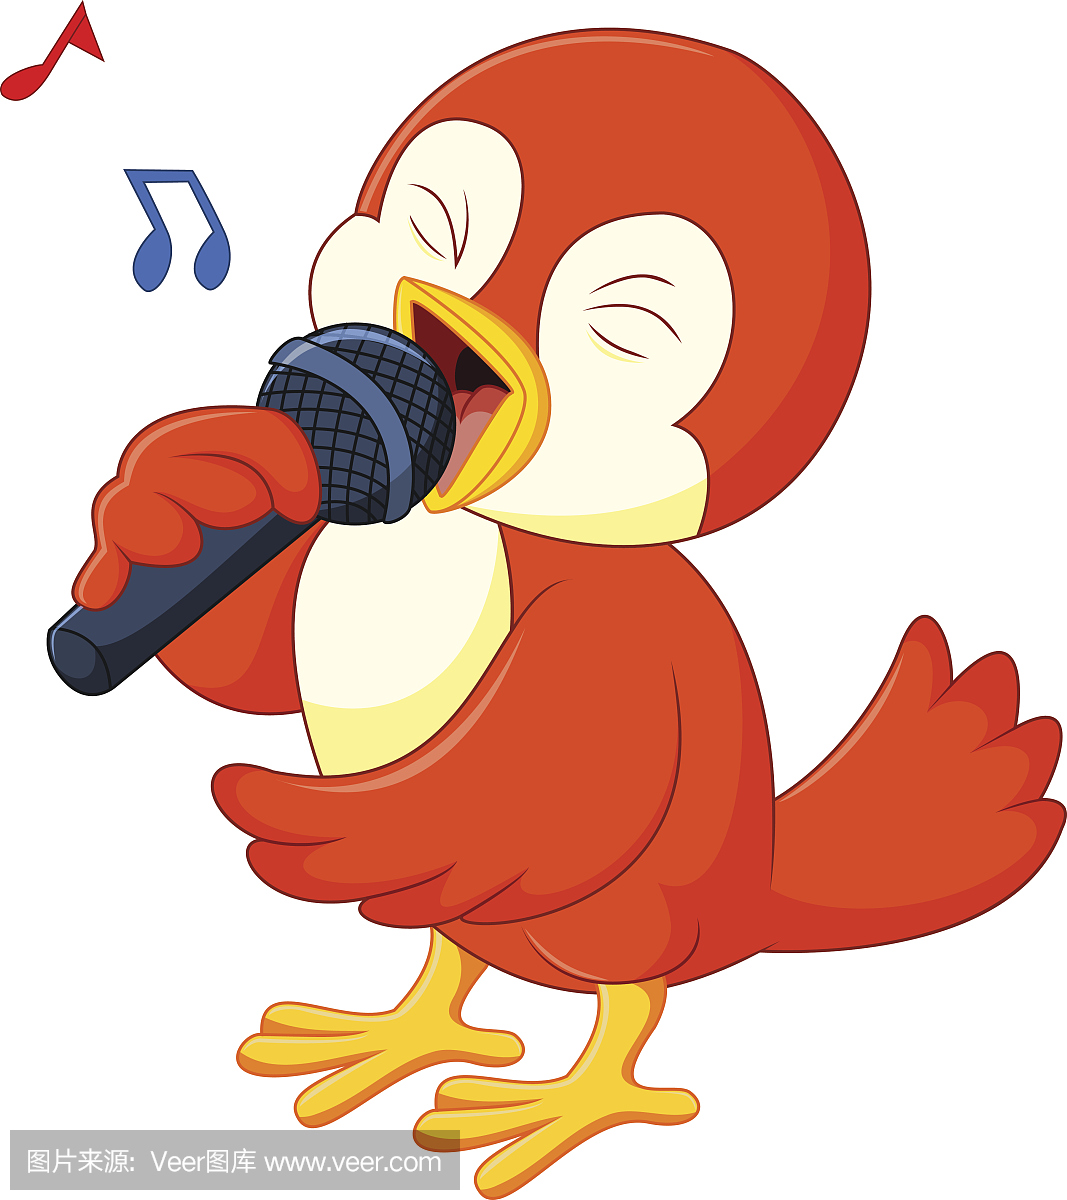 可爱的橙色鸟唱歌